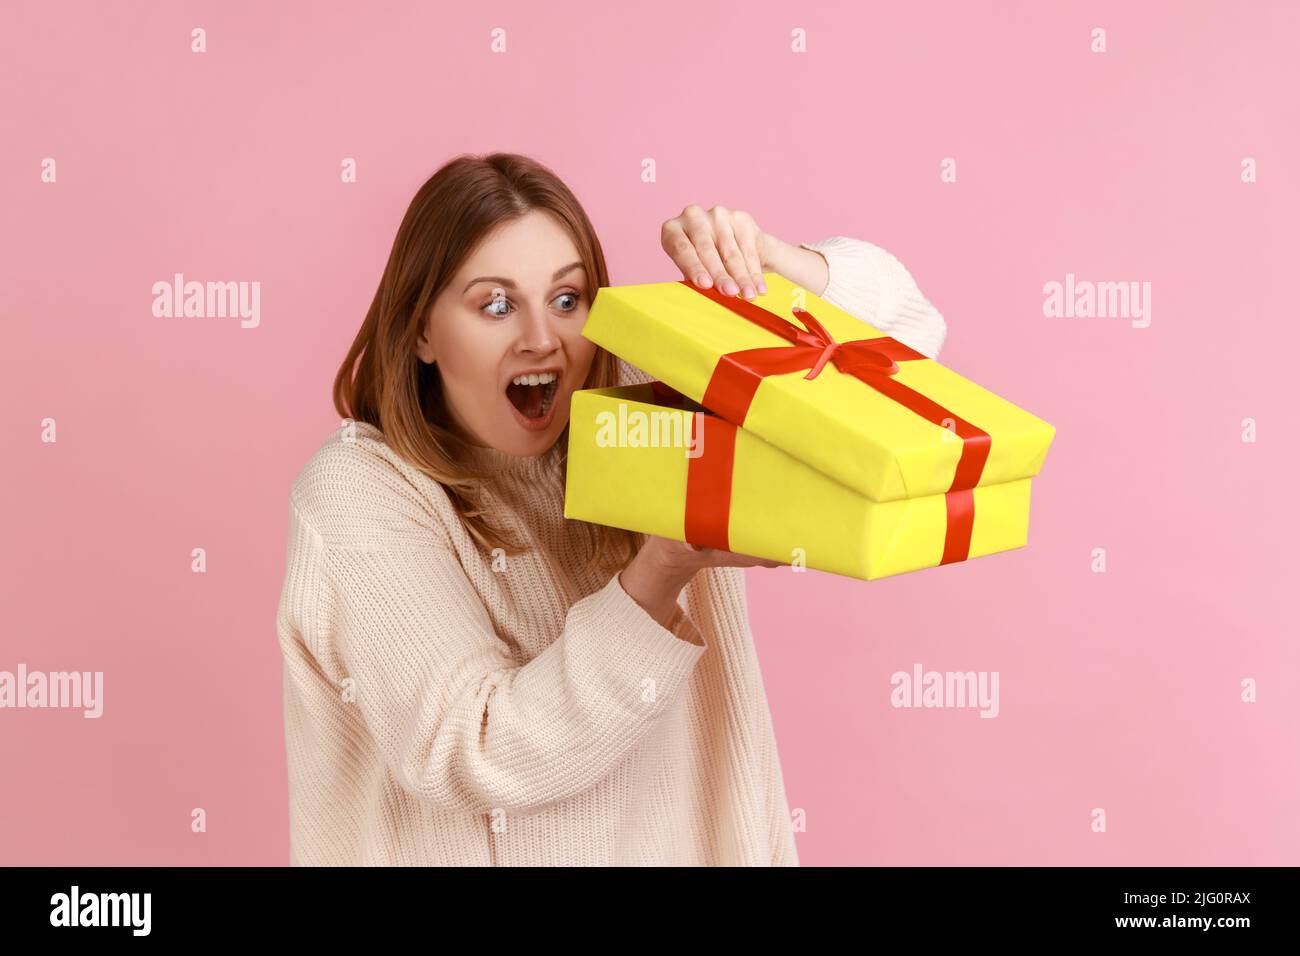 Porträt der aufgeregt jungen erwachsenen blonde Frau in gelb Geschenk-Box suchen, interessiert, was im Inneren, trägt weißen Pullover. Innenaufnahme des Studios isoliert auf rosa Hintergrund. Stockfoto